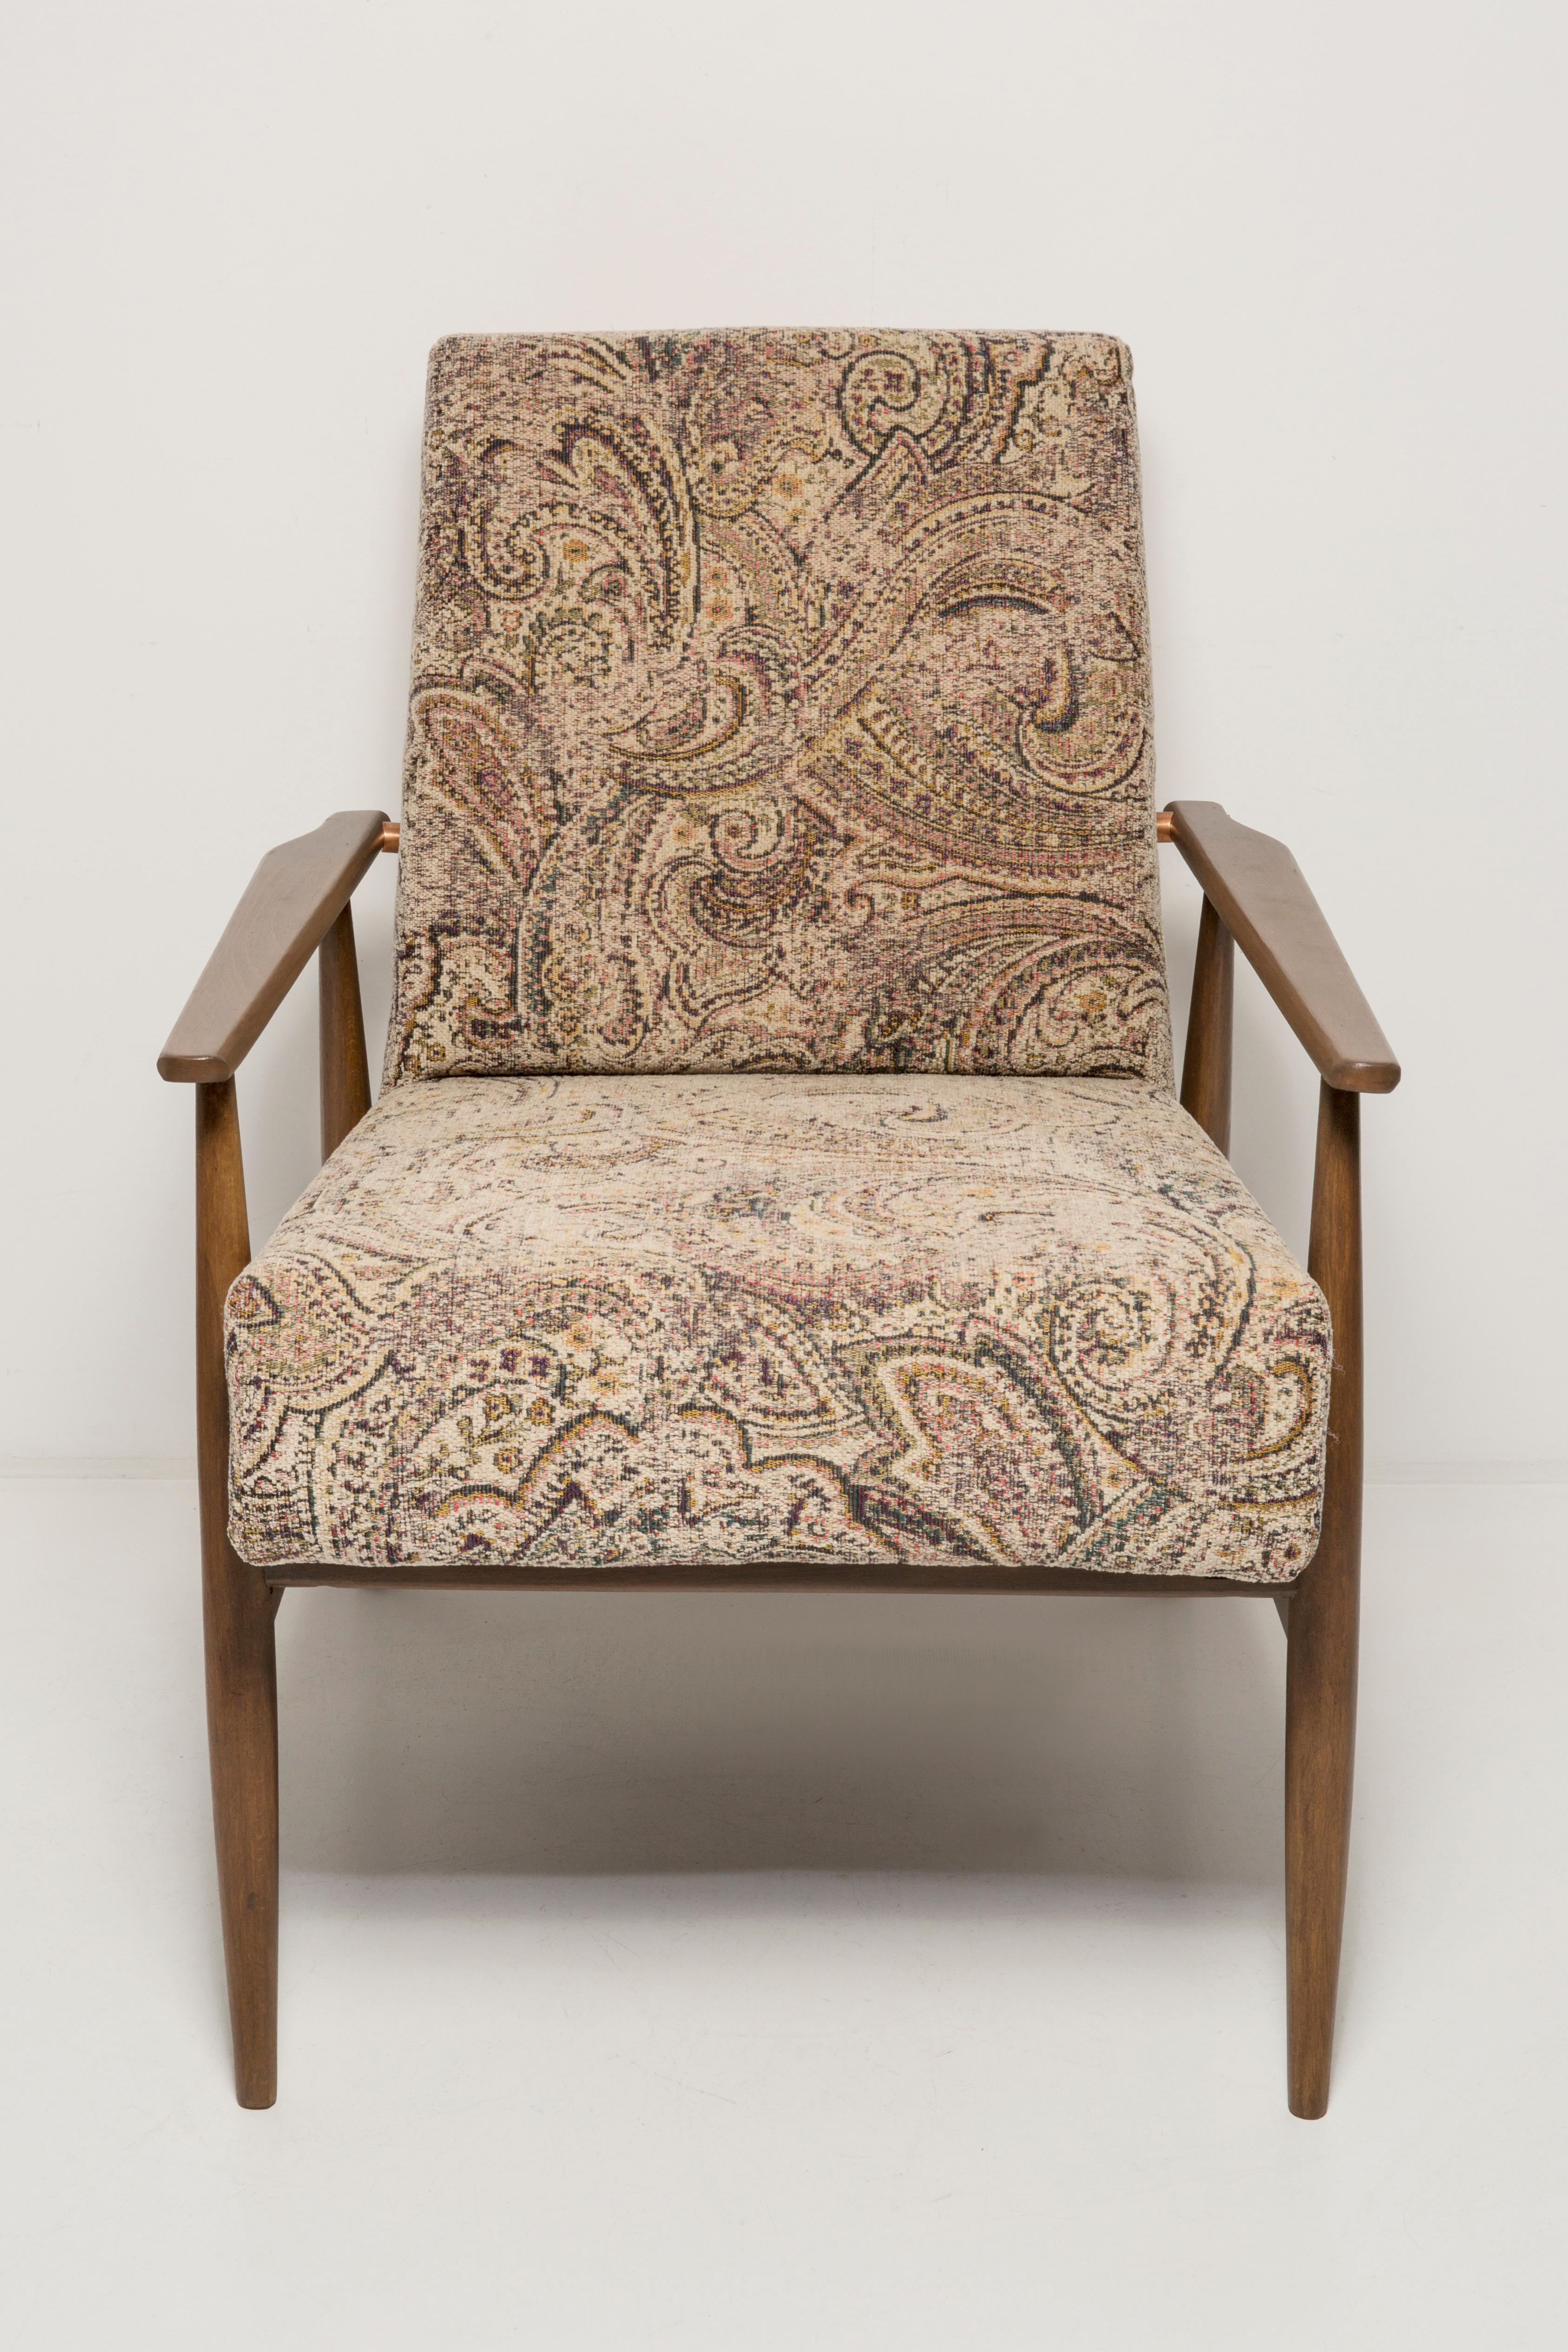 Magnifique fauteuil restauré, conçu par Henryk Lis. Meubles après rénovation complète de la menuiserie et de la tapisserie d'ameublement. Le tissu, qui recouvre un dossier et une assise, est un jacquard italien Green Leaves de haute qualité. Le